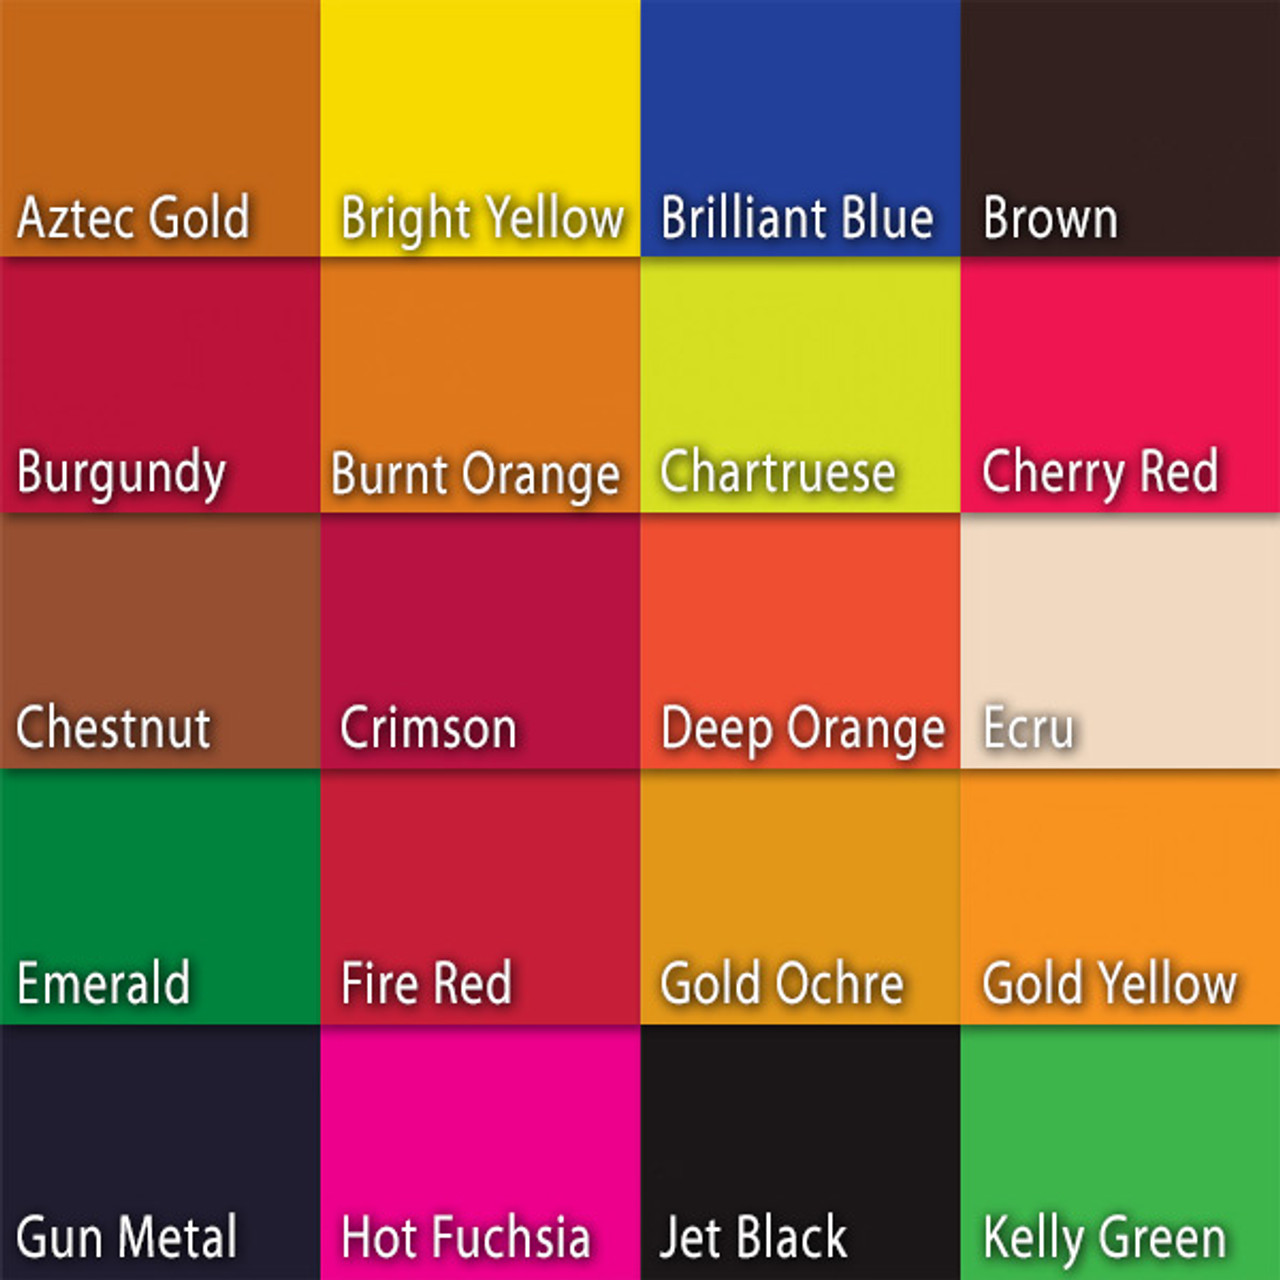  Jacquard Acid Dye Set-Yellow, Turquoise, Red & Black